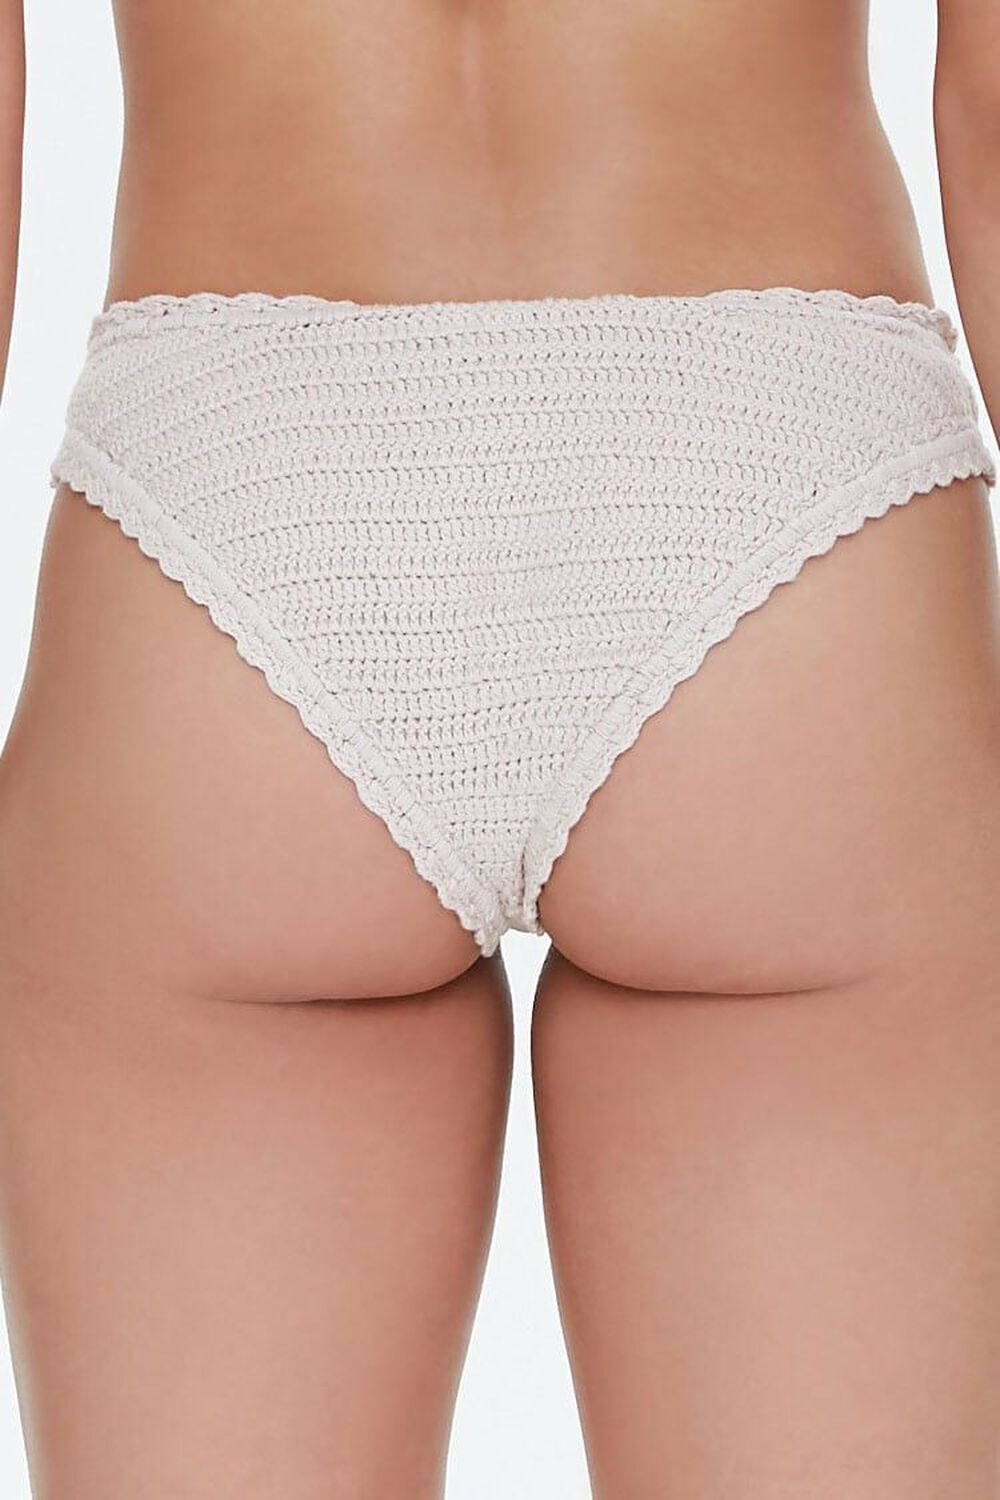 BEIGE Crochet Low-Rise Bikini Bottoms, image 3